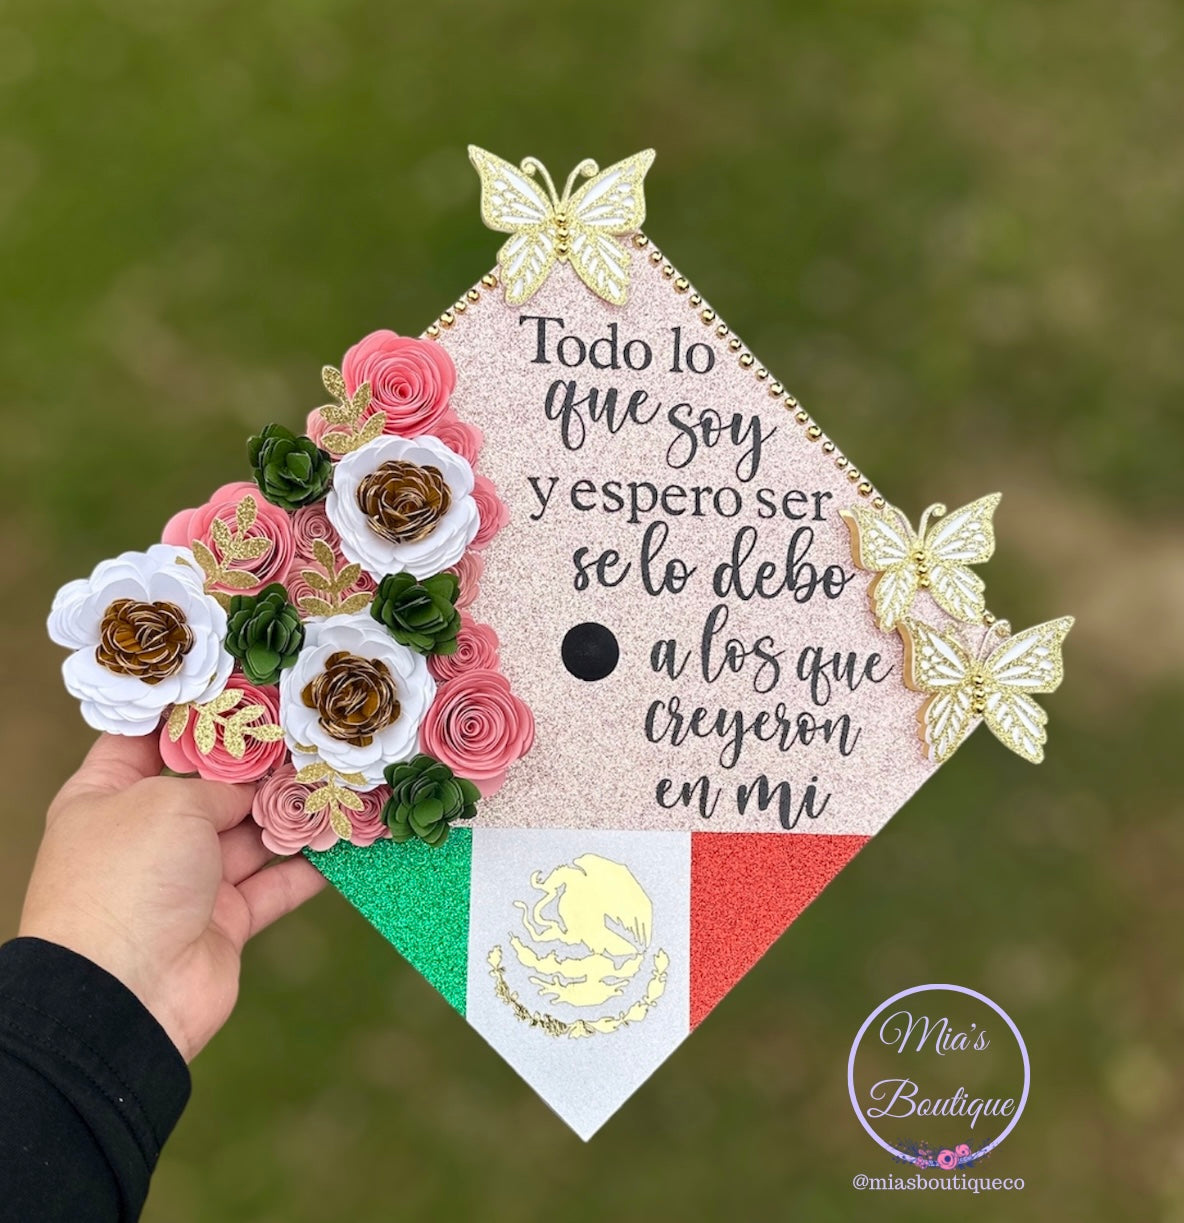 Custom Mexican Graduation Cap Floral Mexican Grad Cap Personalized Mexican Graduation Cap Floral Sunflower Flag Mexico Graduation Cap Para Mis
Padres Custom Graduation Cap cover